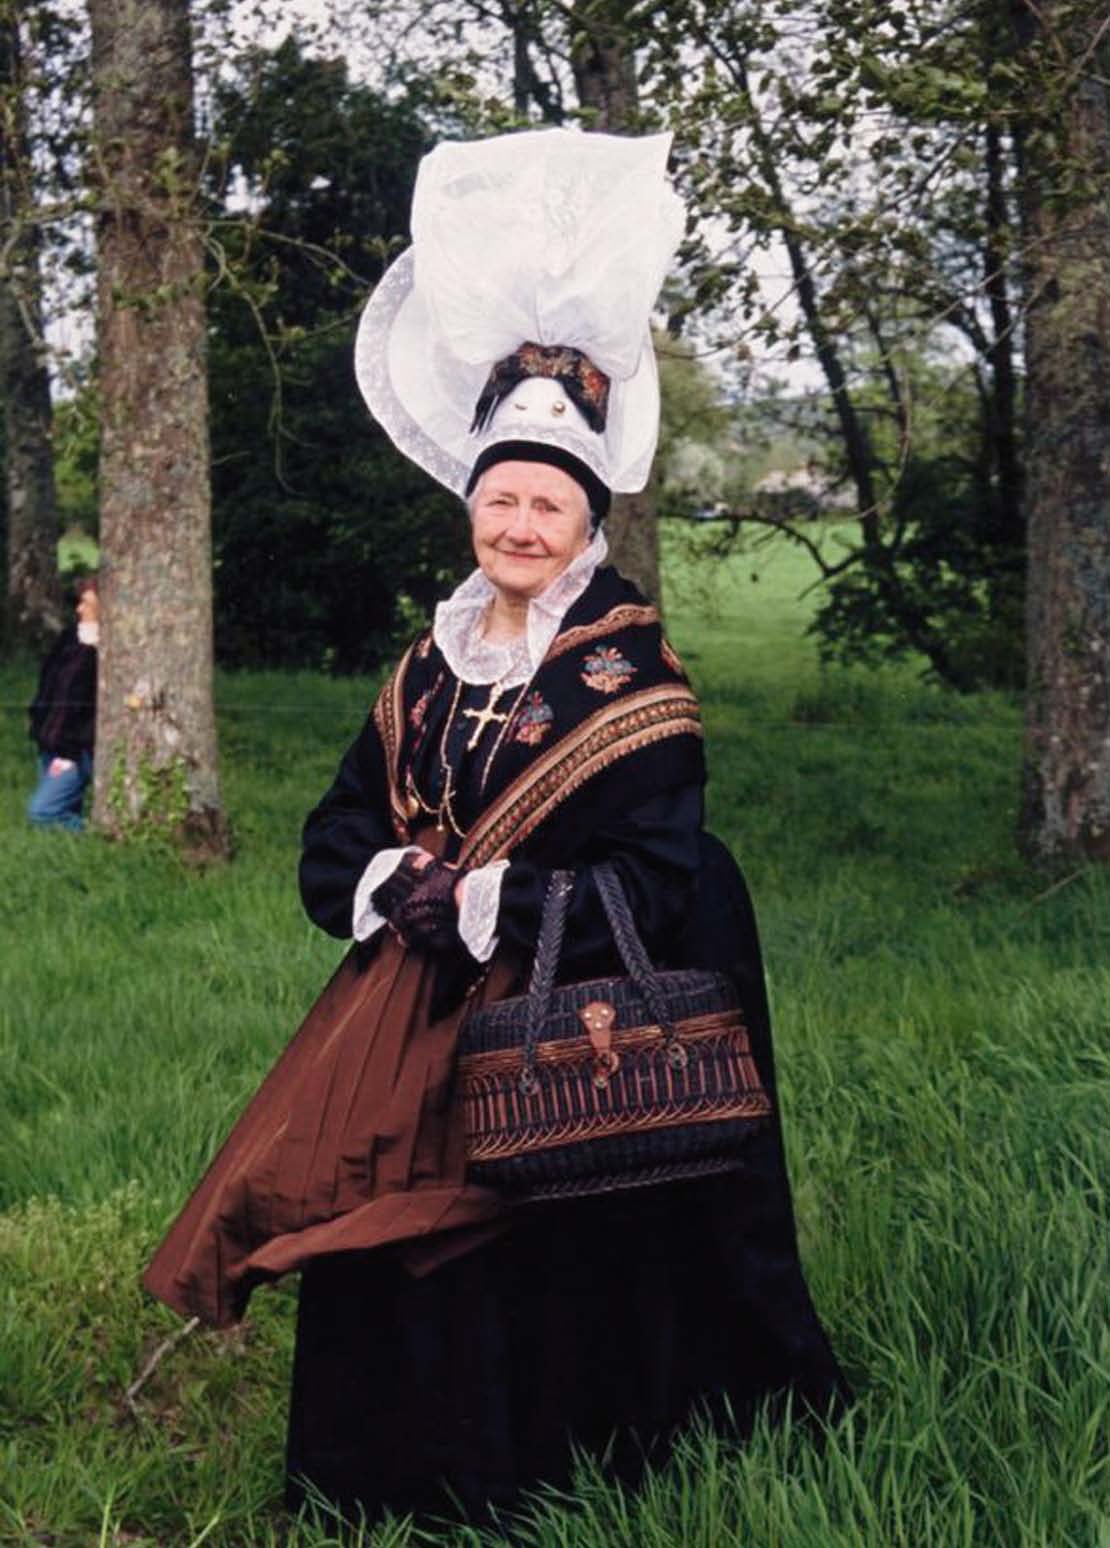 Costume de bourgeoise avec la grande coiffe portée pour les fêtes vers 1820. (© P’tit Capé de Brix)